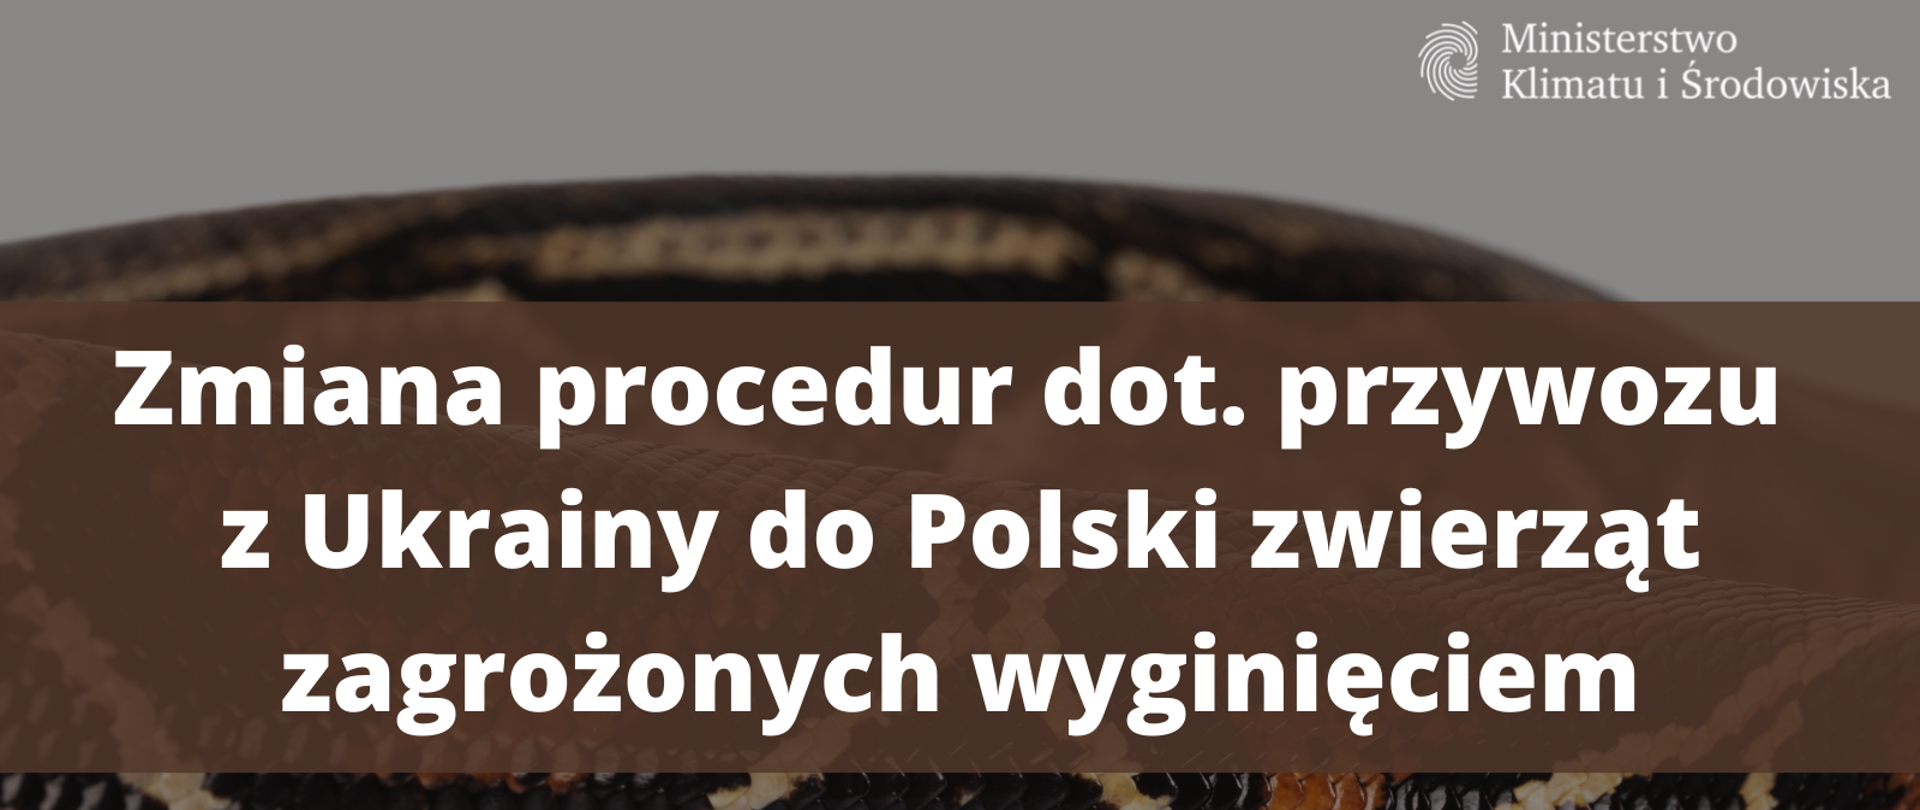 Zmiana procedur przywozu z Ukrainy do Polski zwierząt zagrożonych wyginięciem